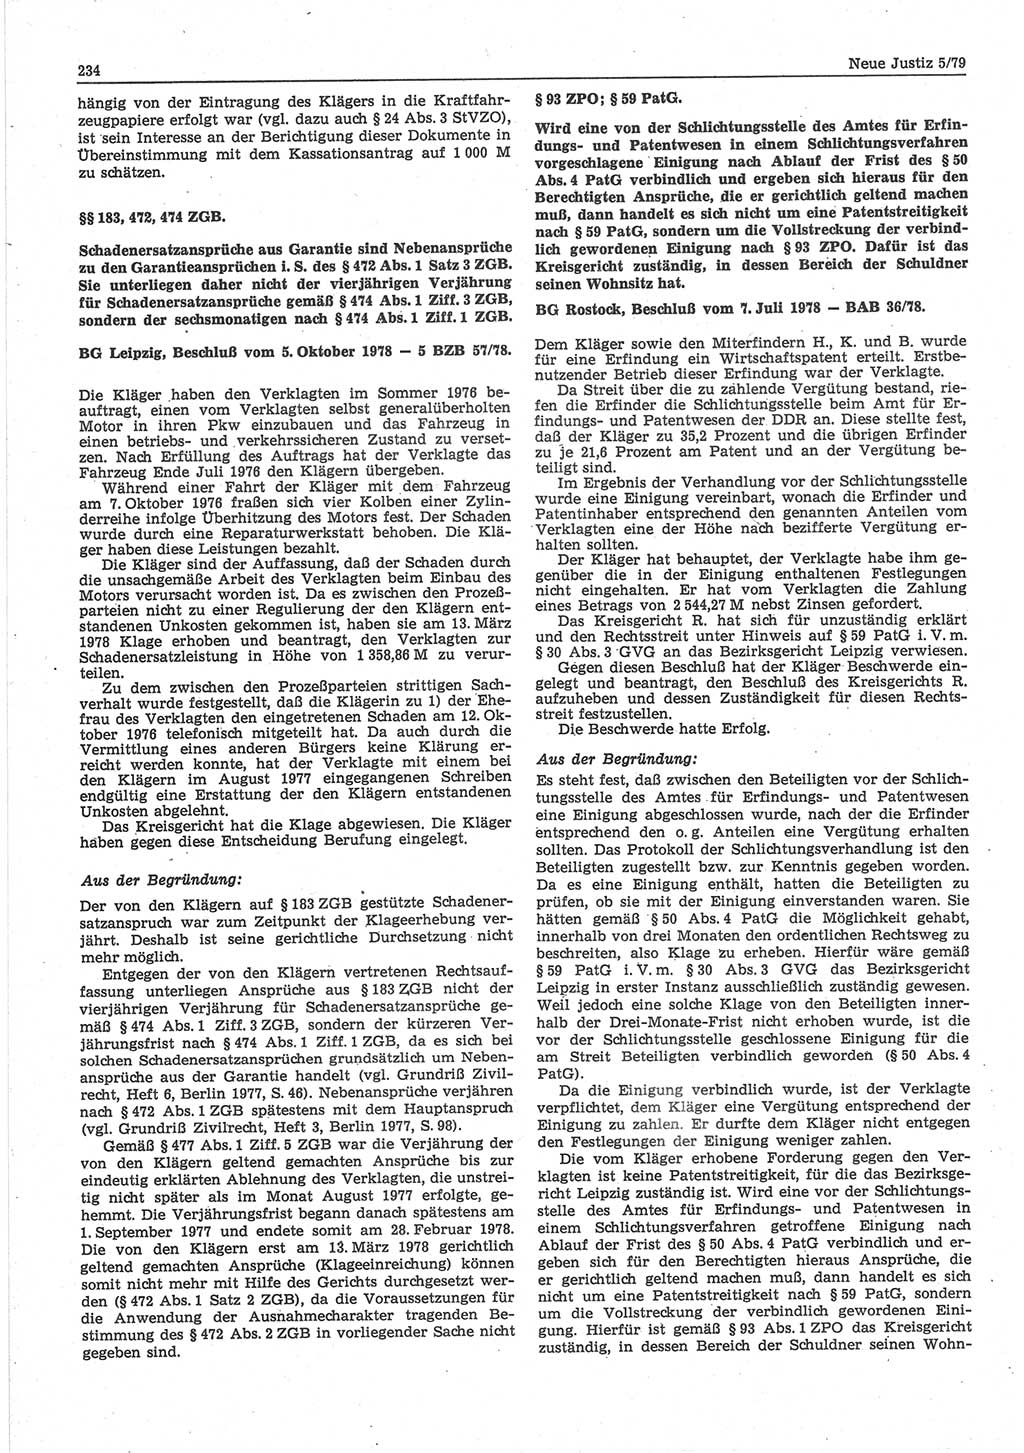 Neue Justiz (NJ), Zeitschrift für sozialistisches Recht und Gesetzlichkeit [Deutsche Demokratische Republik (DDR)], 33. Jahrgang 1979, Seite 234 (NJ DDR 1979, S. 234)